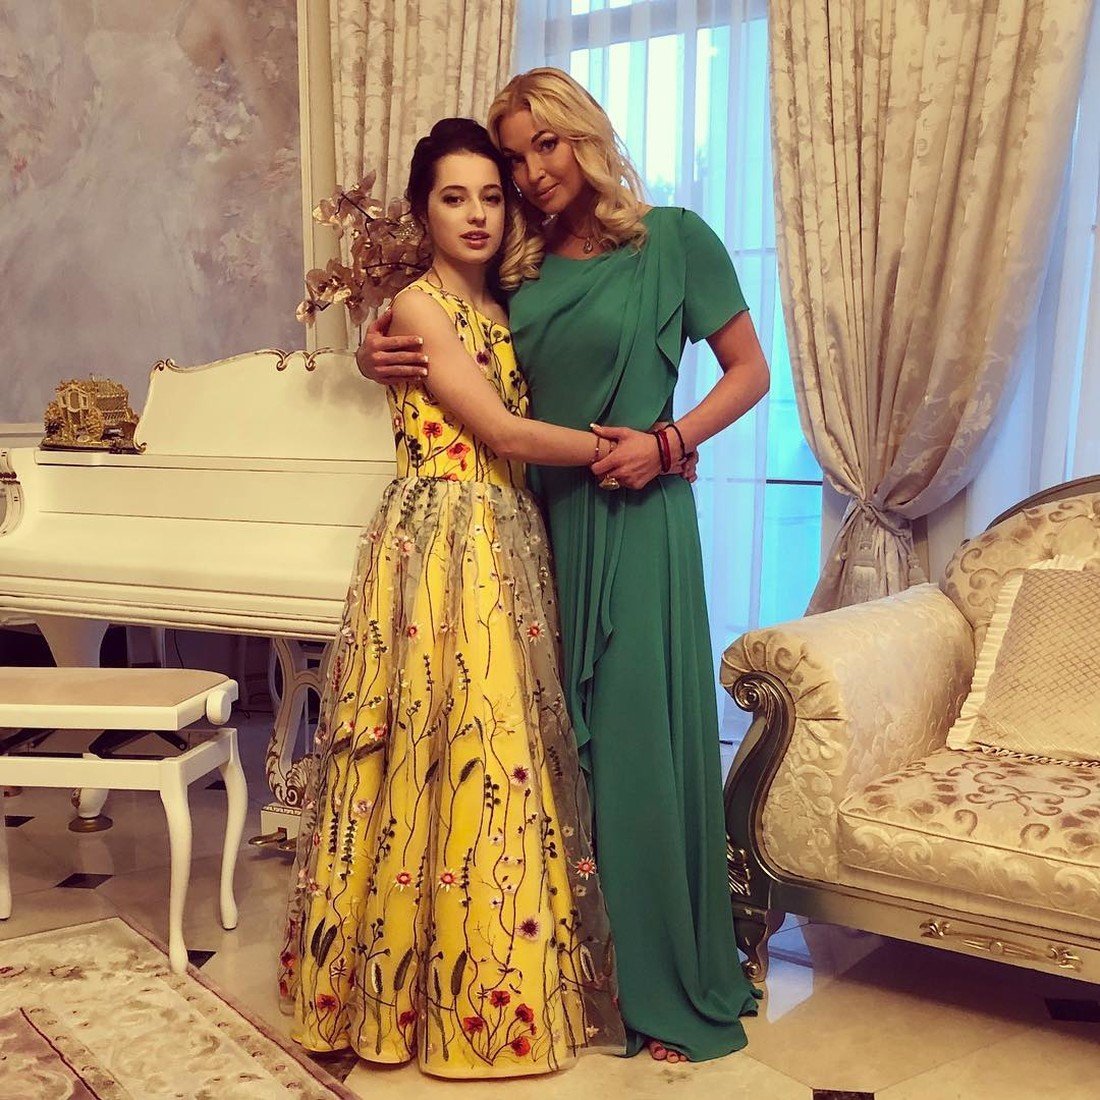 Анастасия Волочкова встретилась со своей дочерью